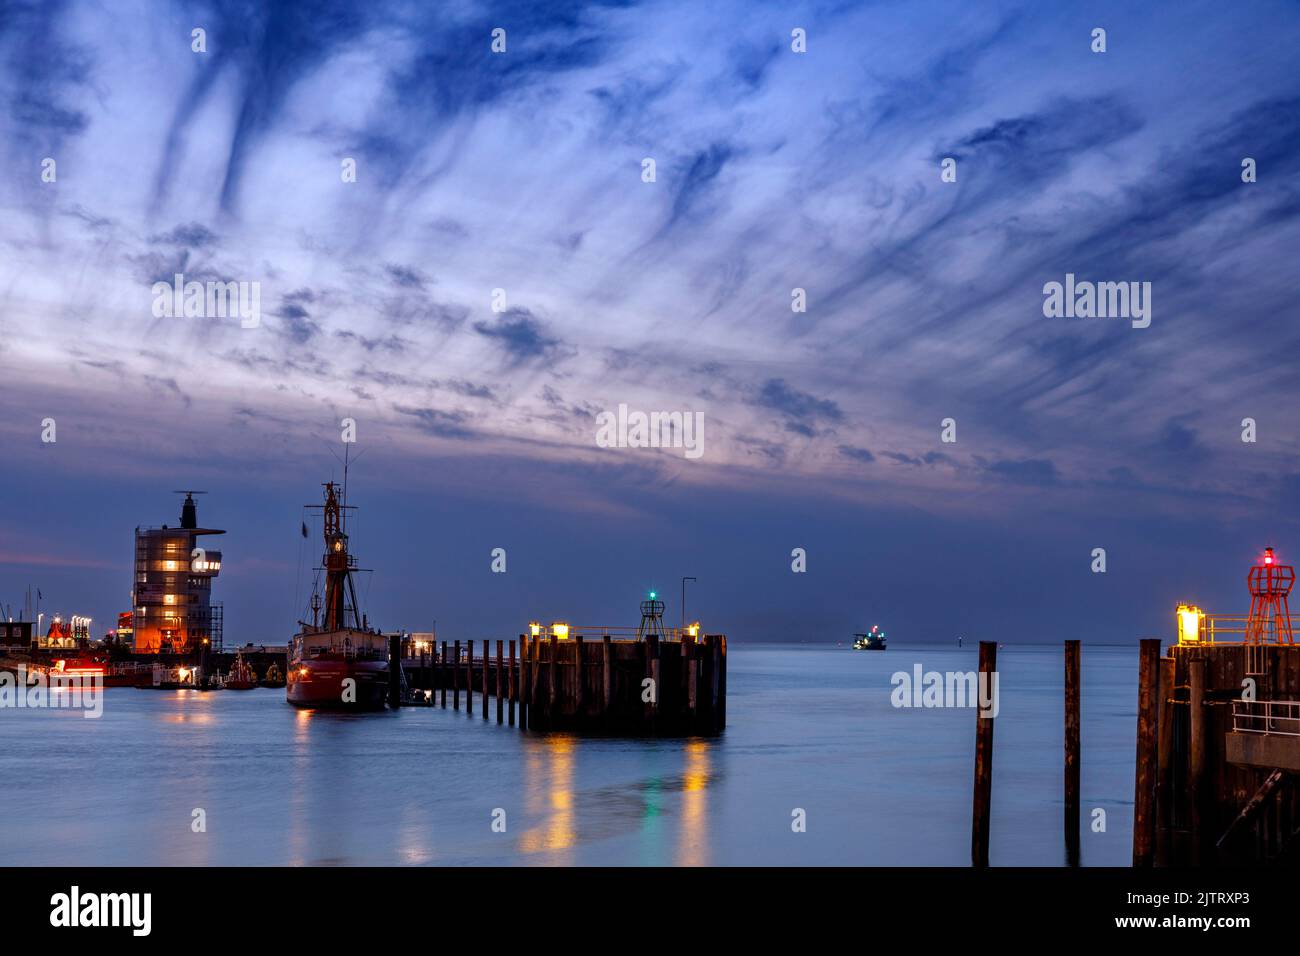 Hafeneinfahrt in Cuxhaven an der Elbmündung bei Nacht Stock Photo